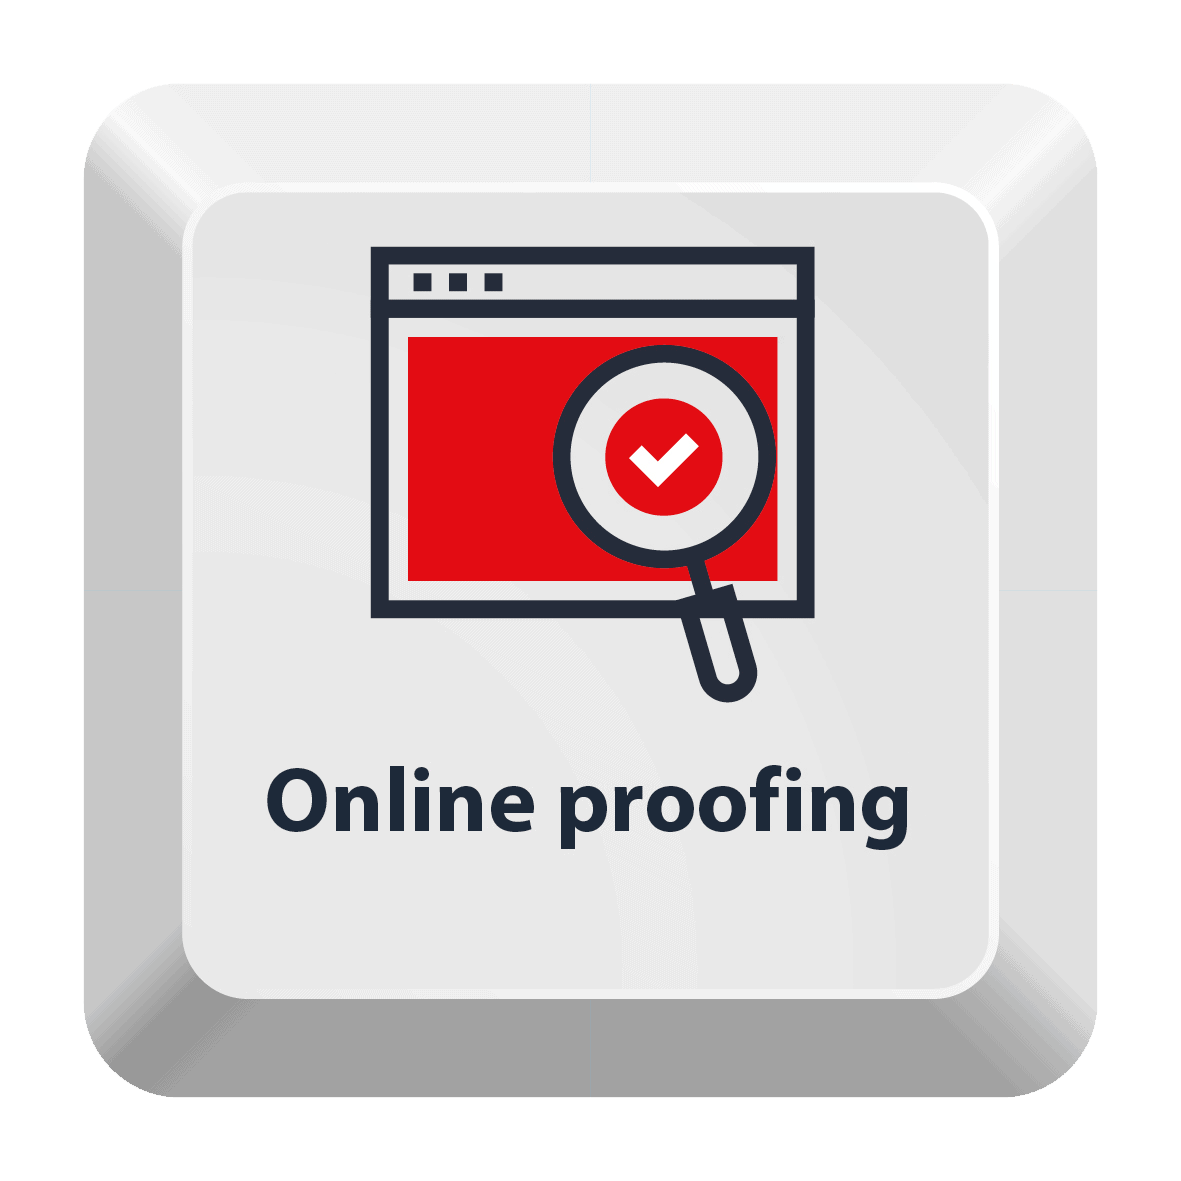 Online proofing